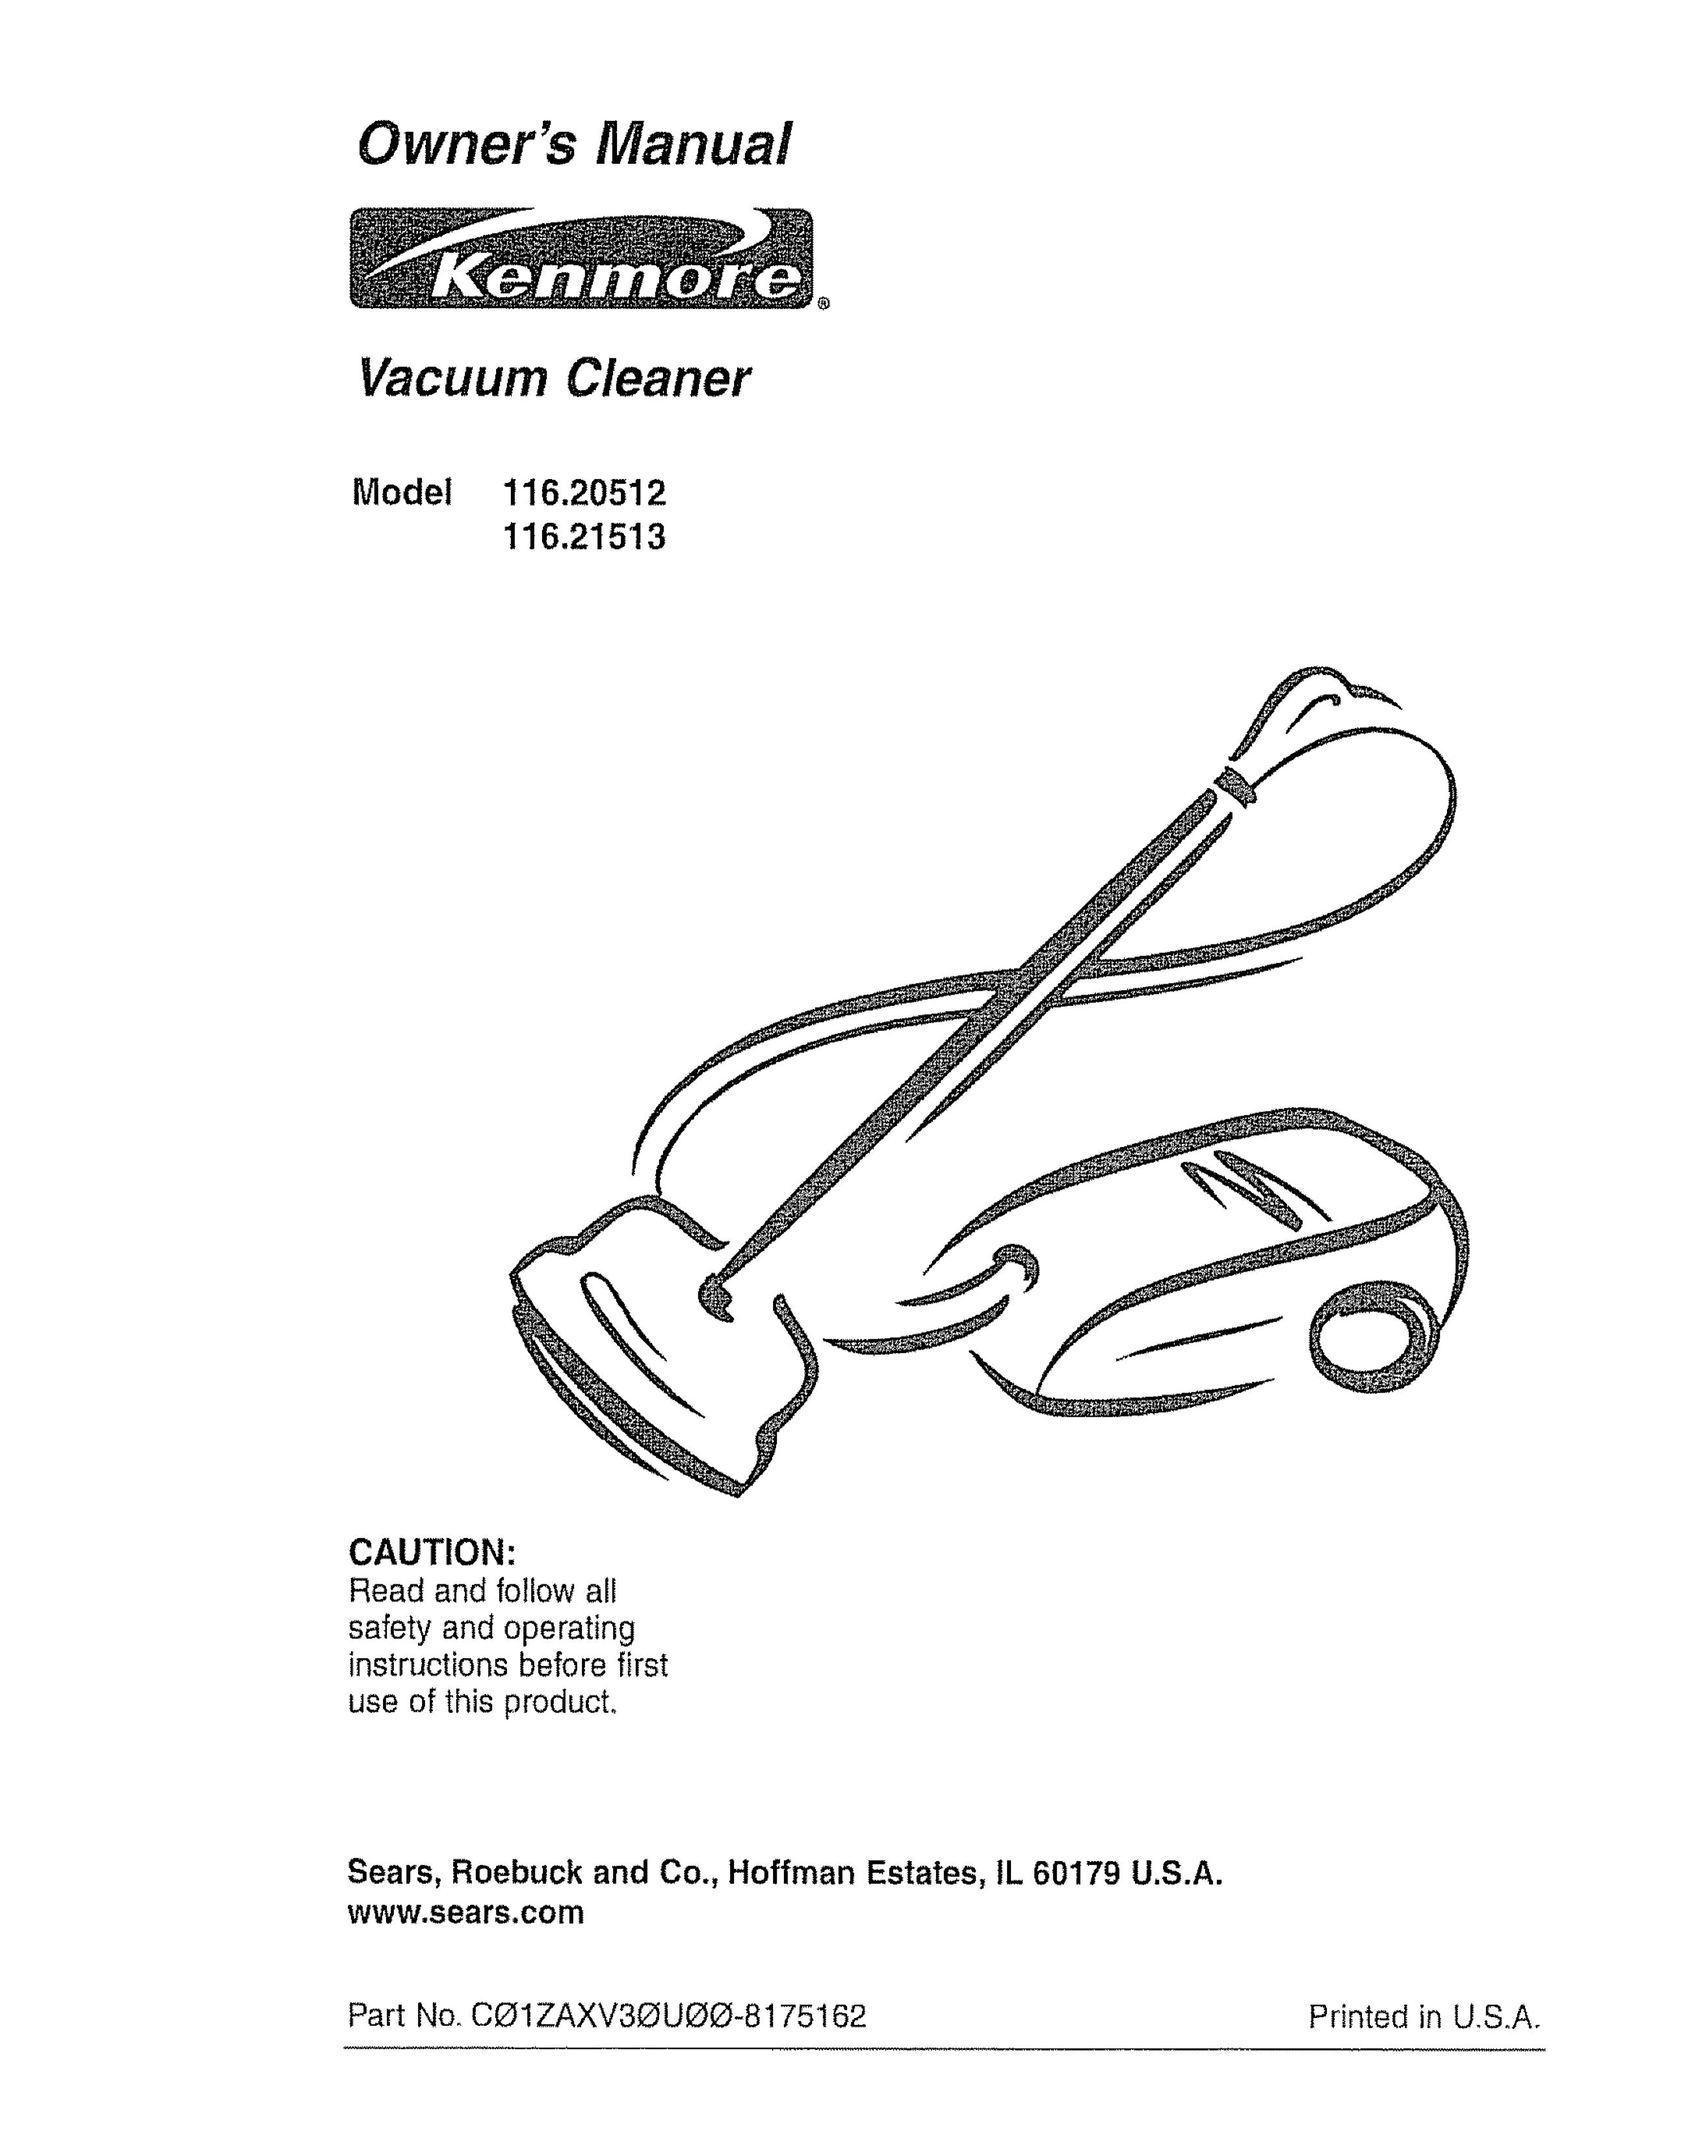 Kenmore 116.21513 Vacuum Cleaner User Manual